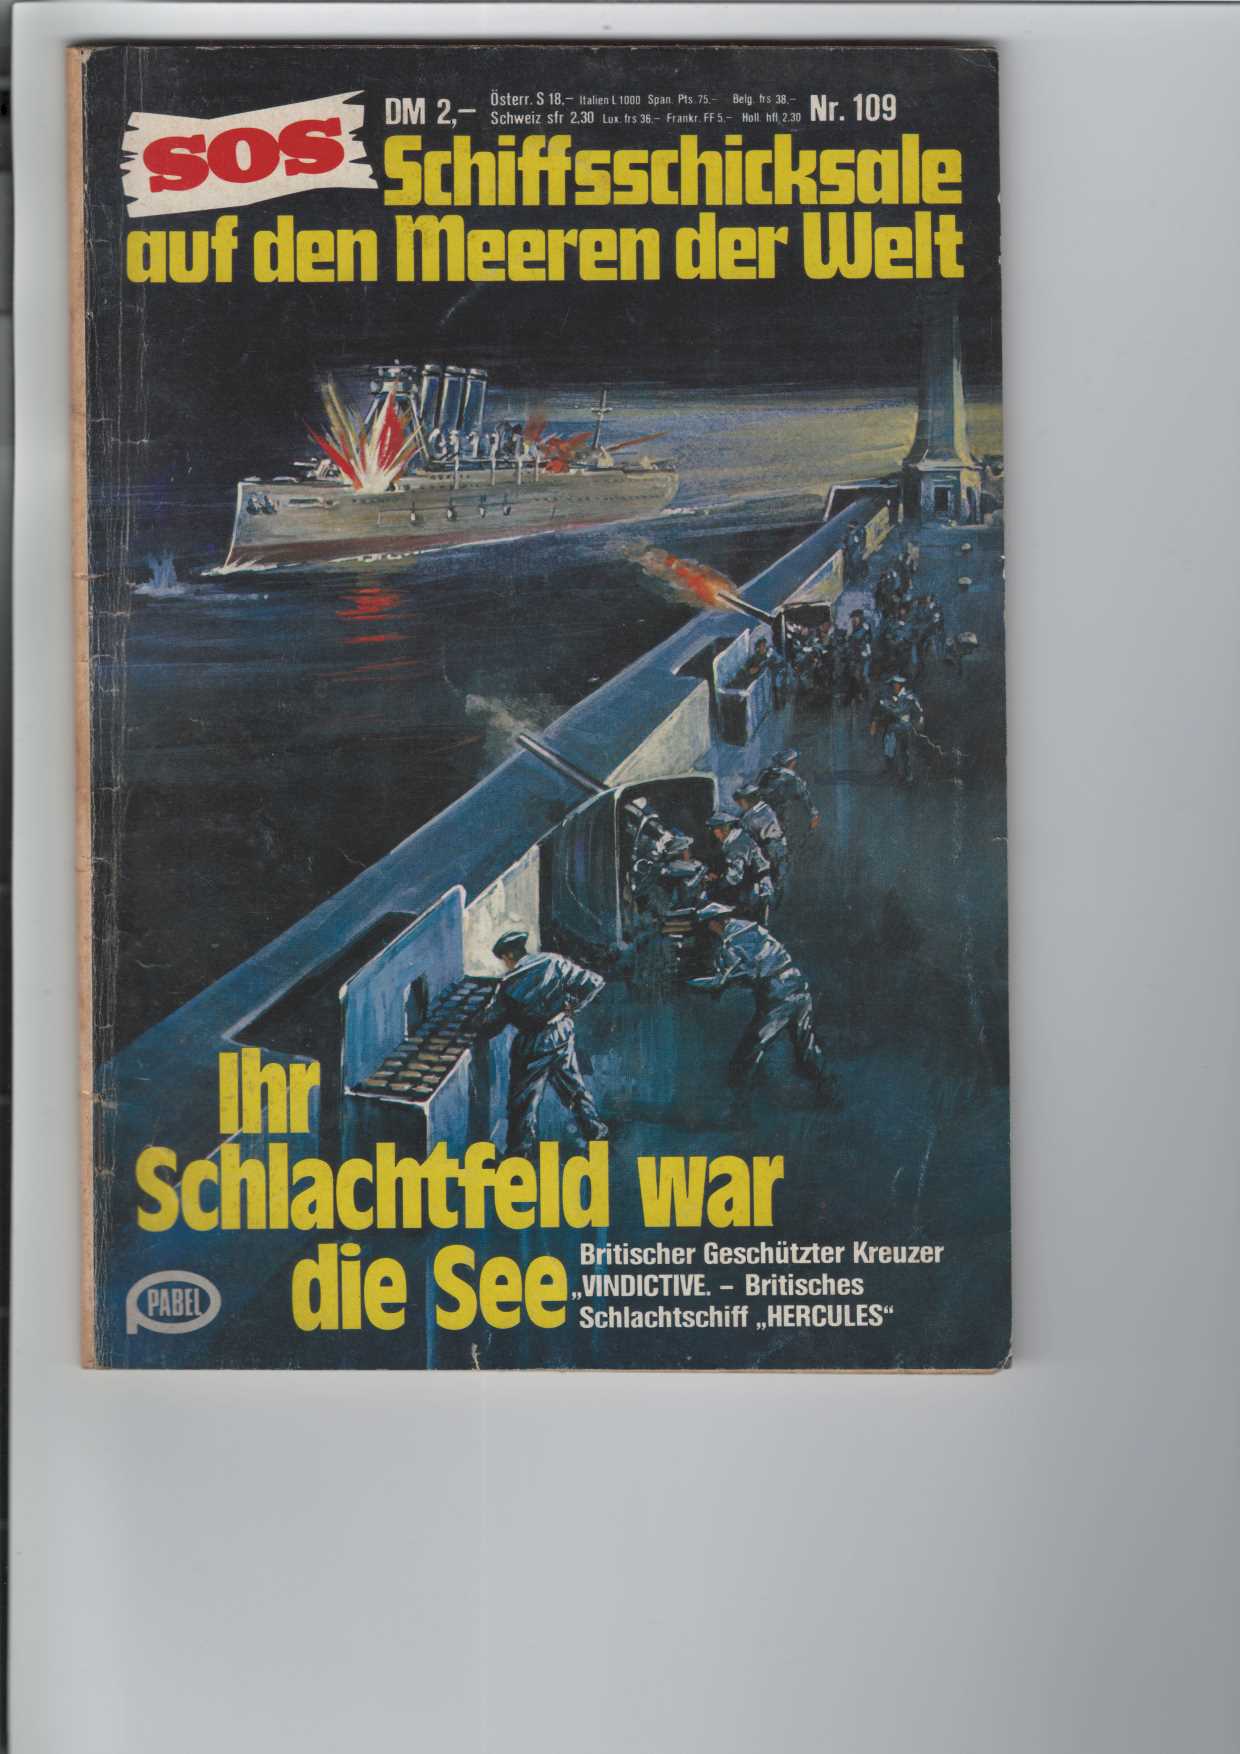 SOS - Schiffsschicksale auf den Meeren der Welt: Ihr Schlachtfeld war die See.